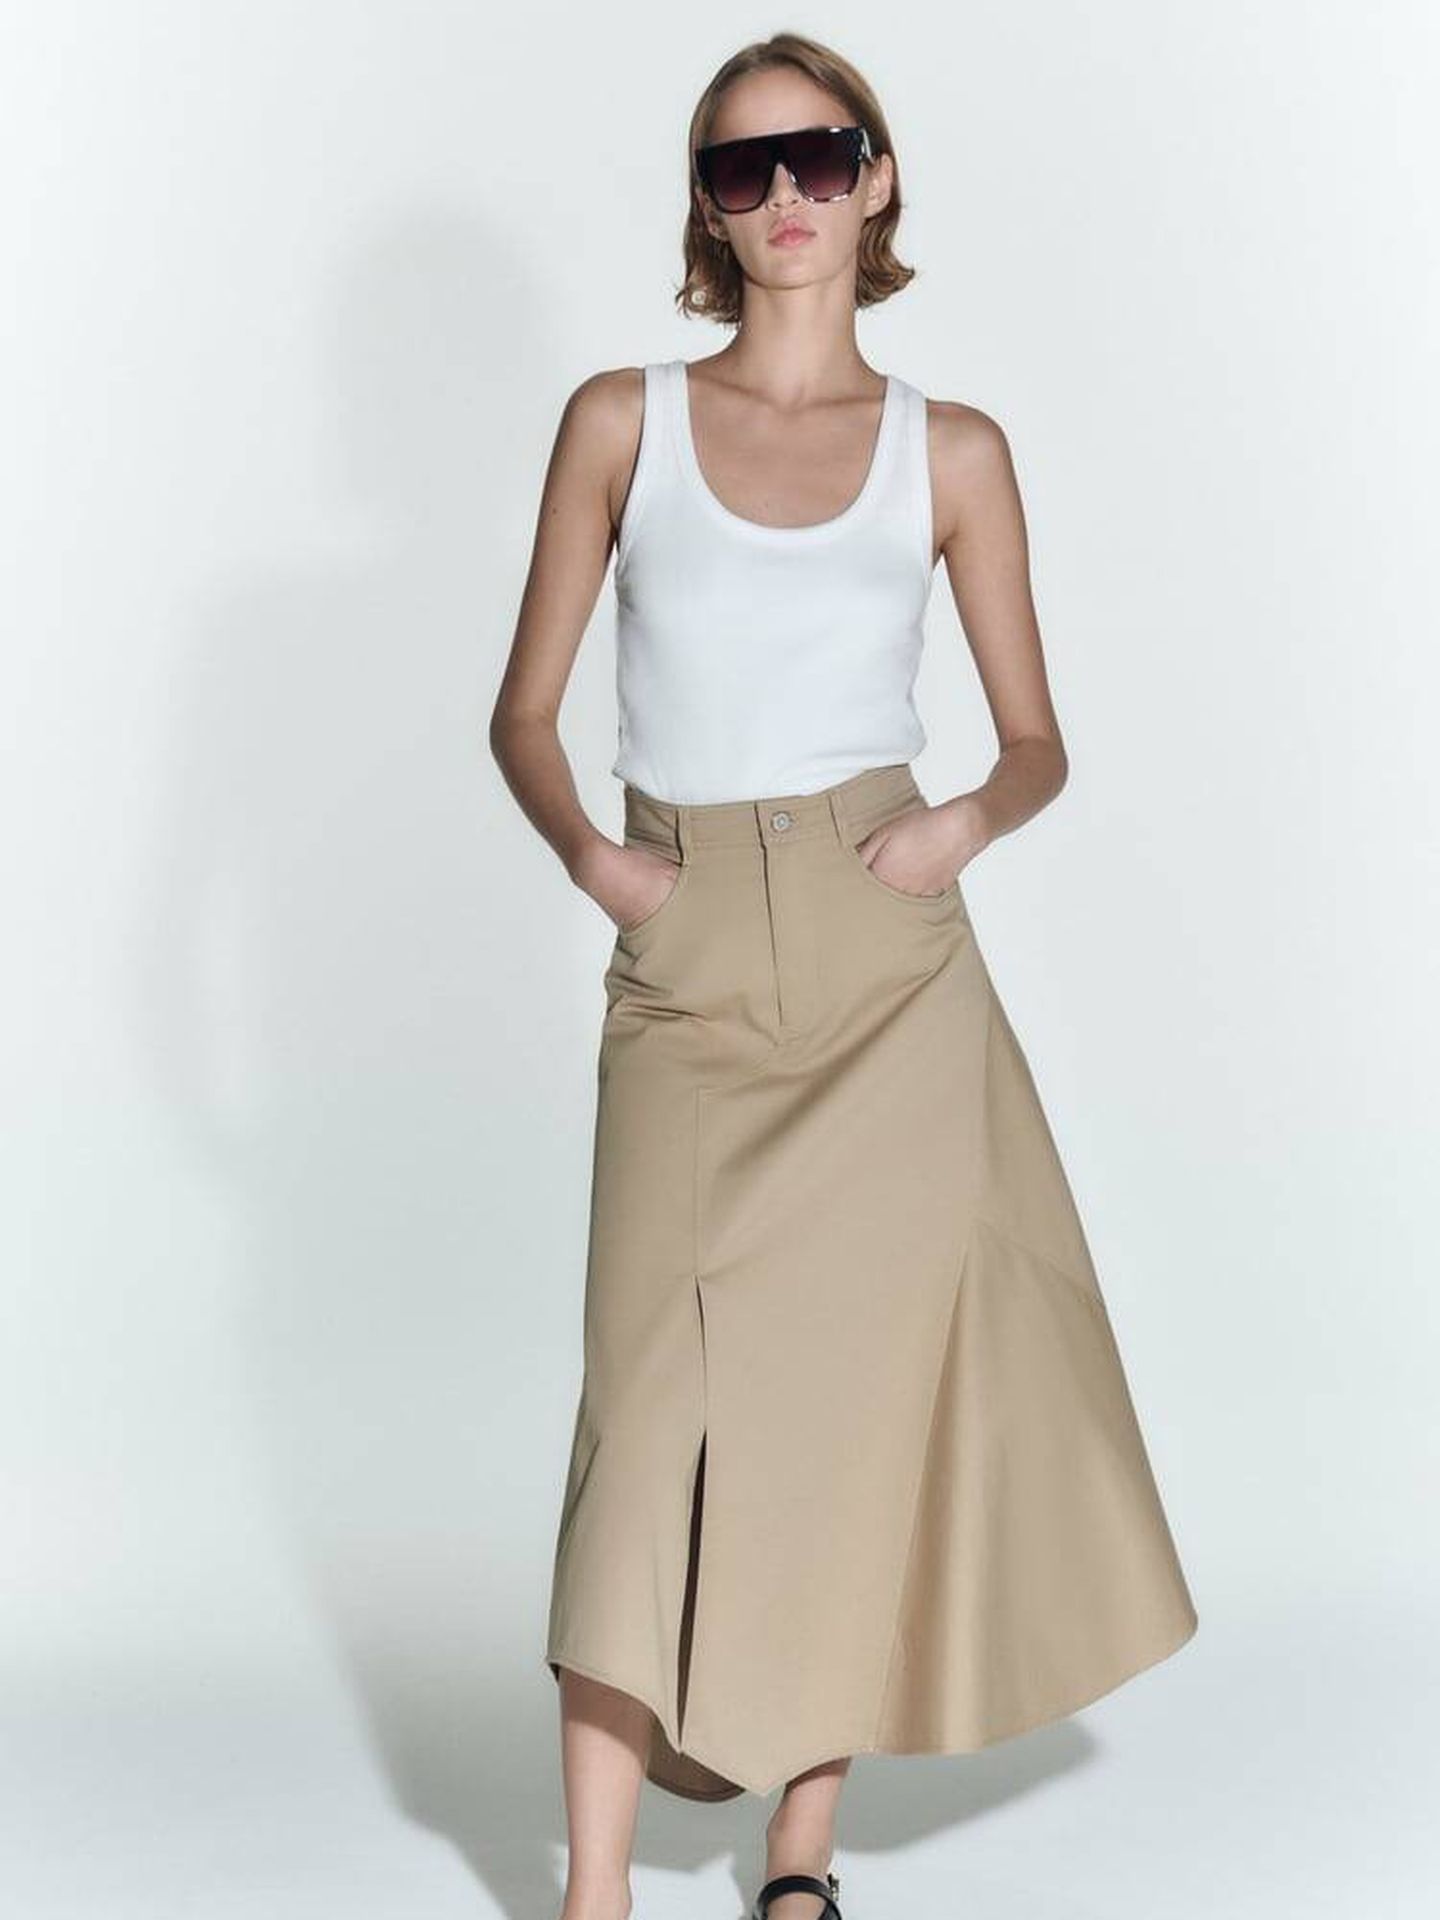 La 'influencer' de 50 años que Zara prefirió frente a sus modelos